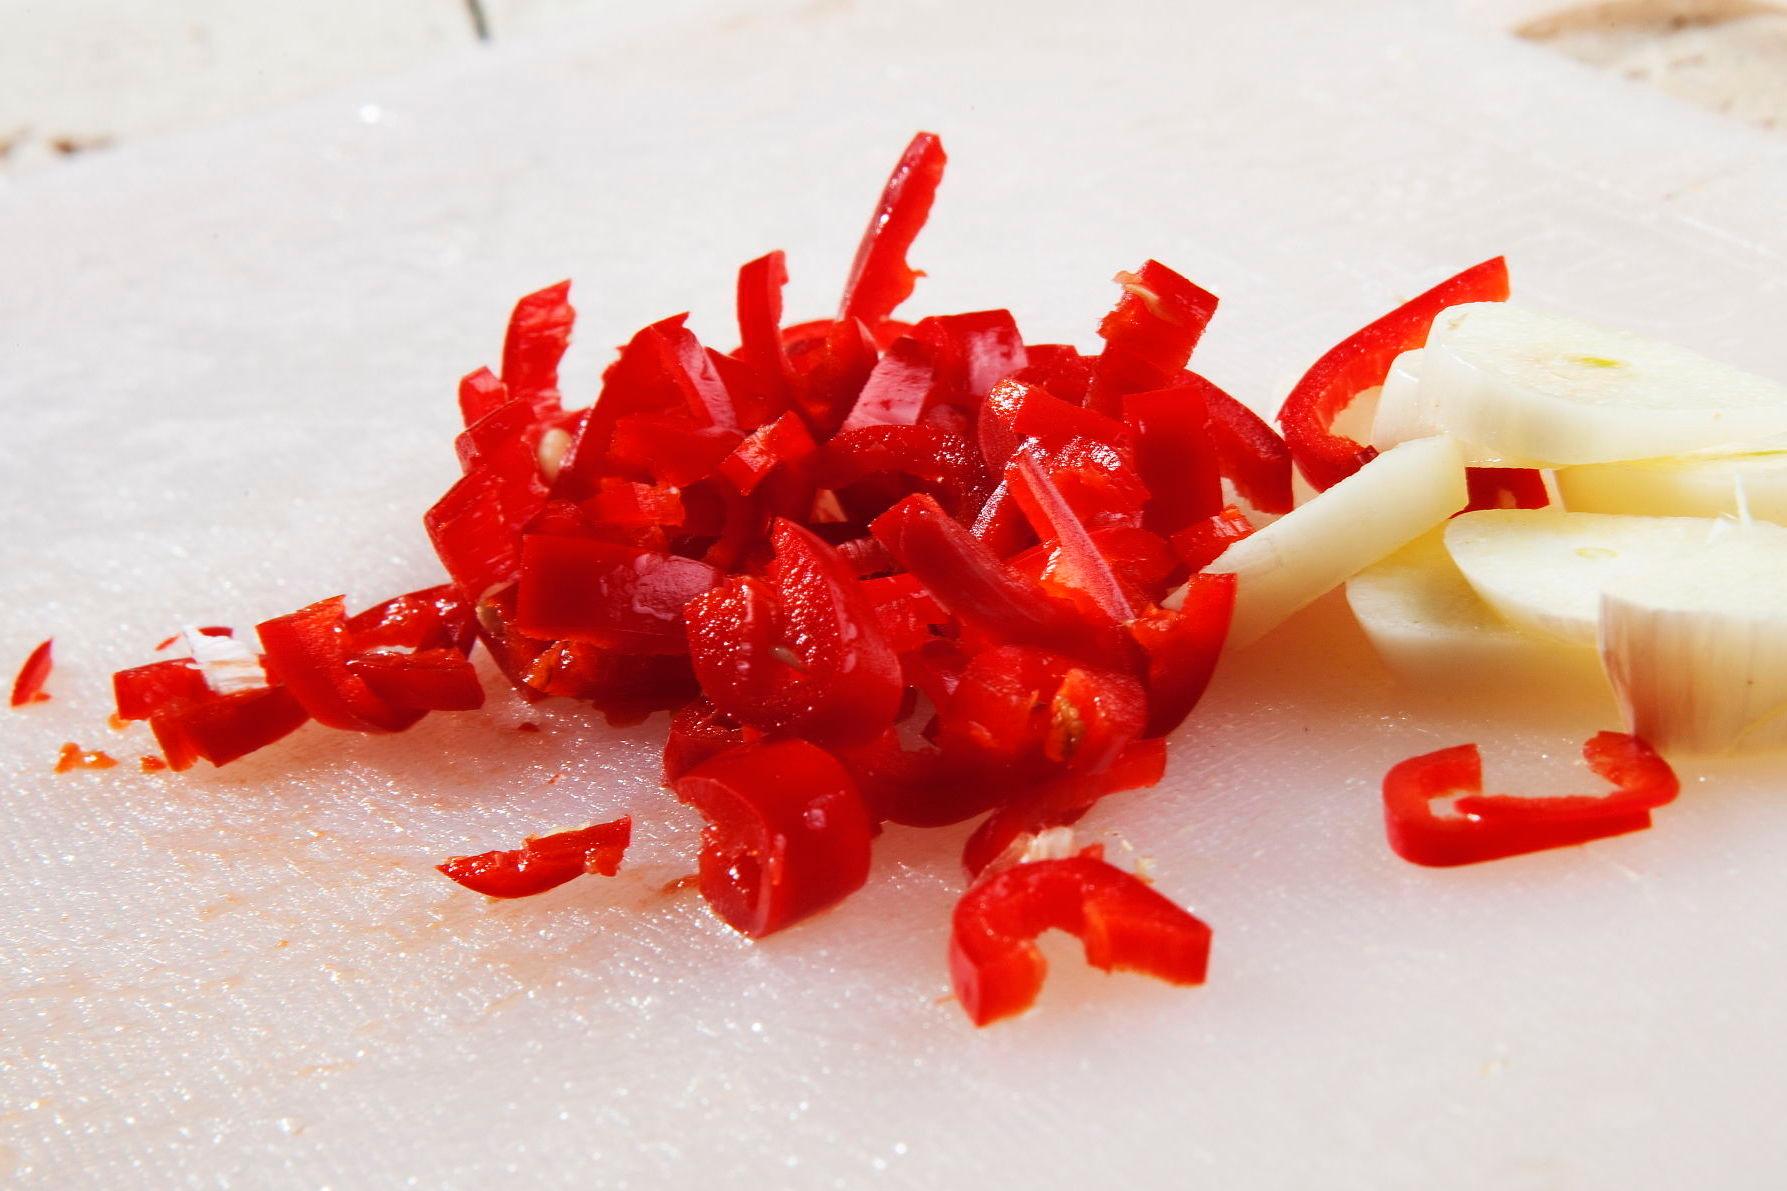 SVIENDE: Det er typisk å gni seg selv i øyne etter å ha kuttet chili. Foto: Magnar Kirknes/VG